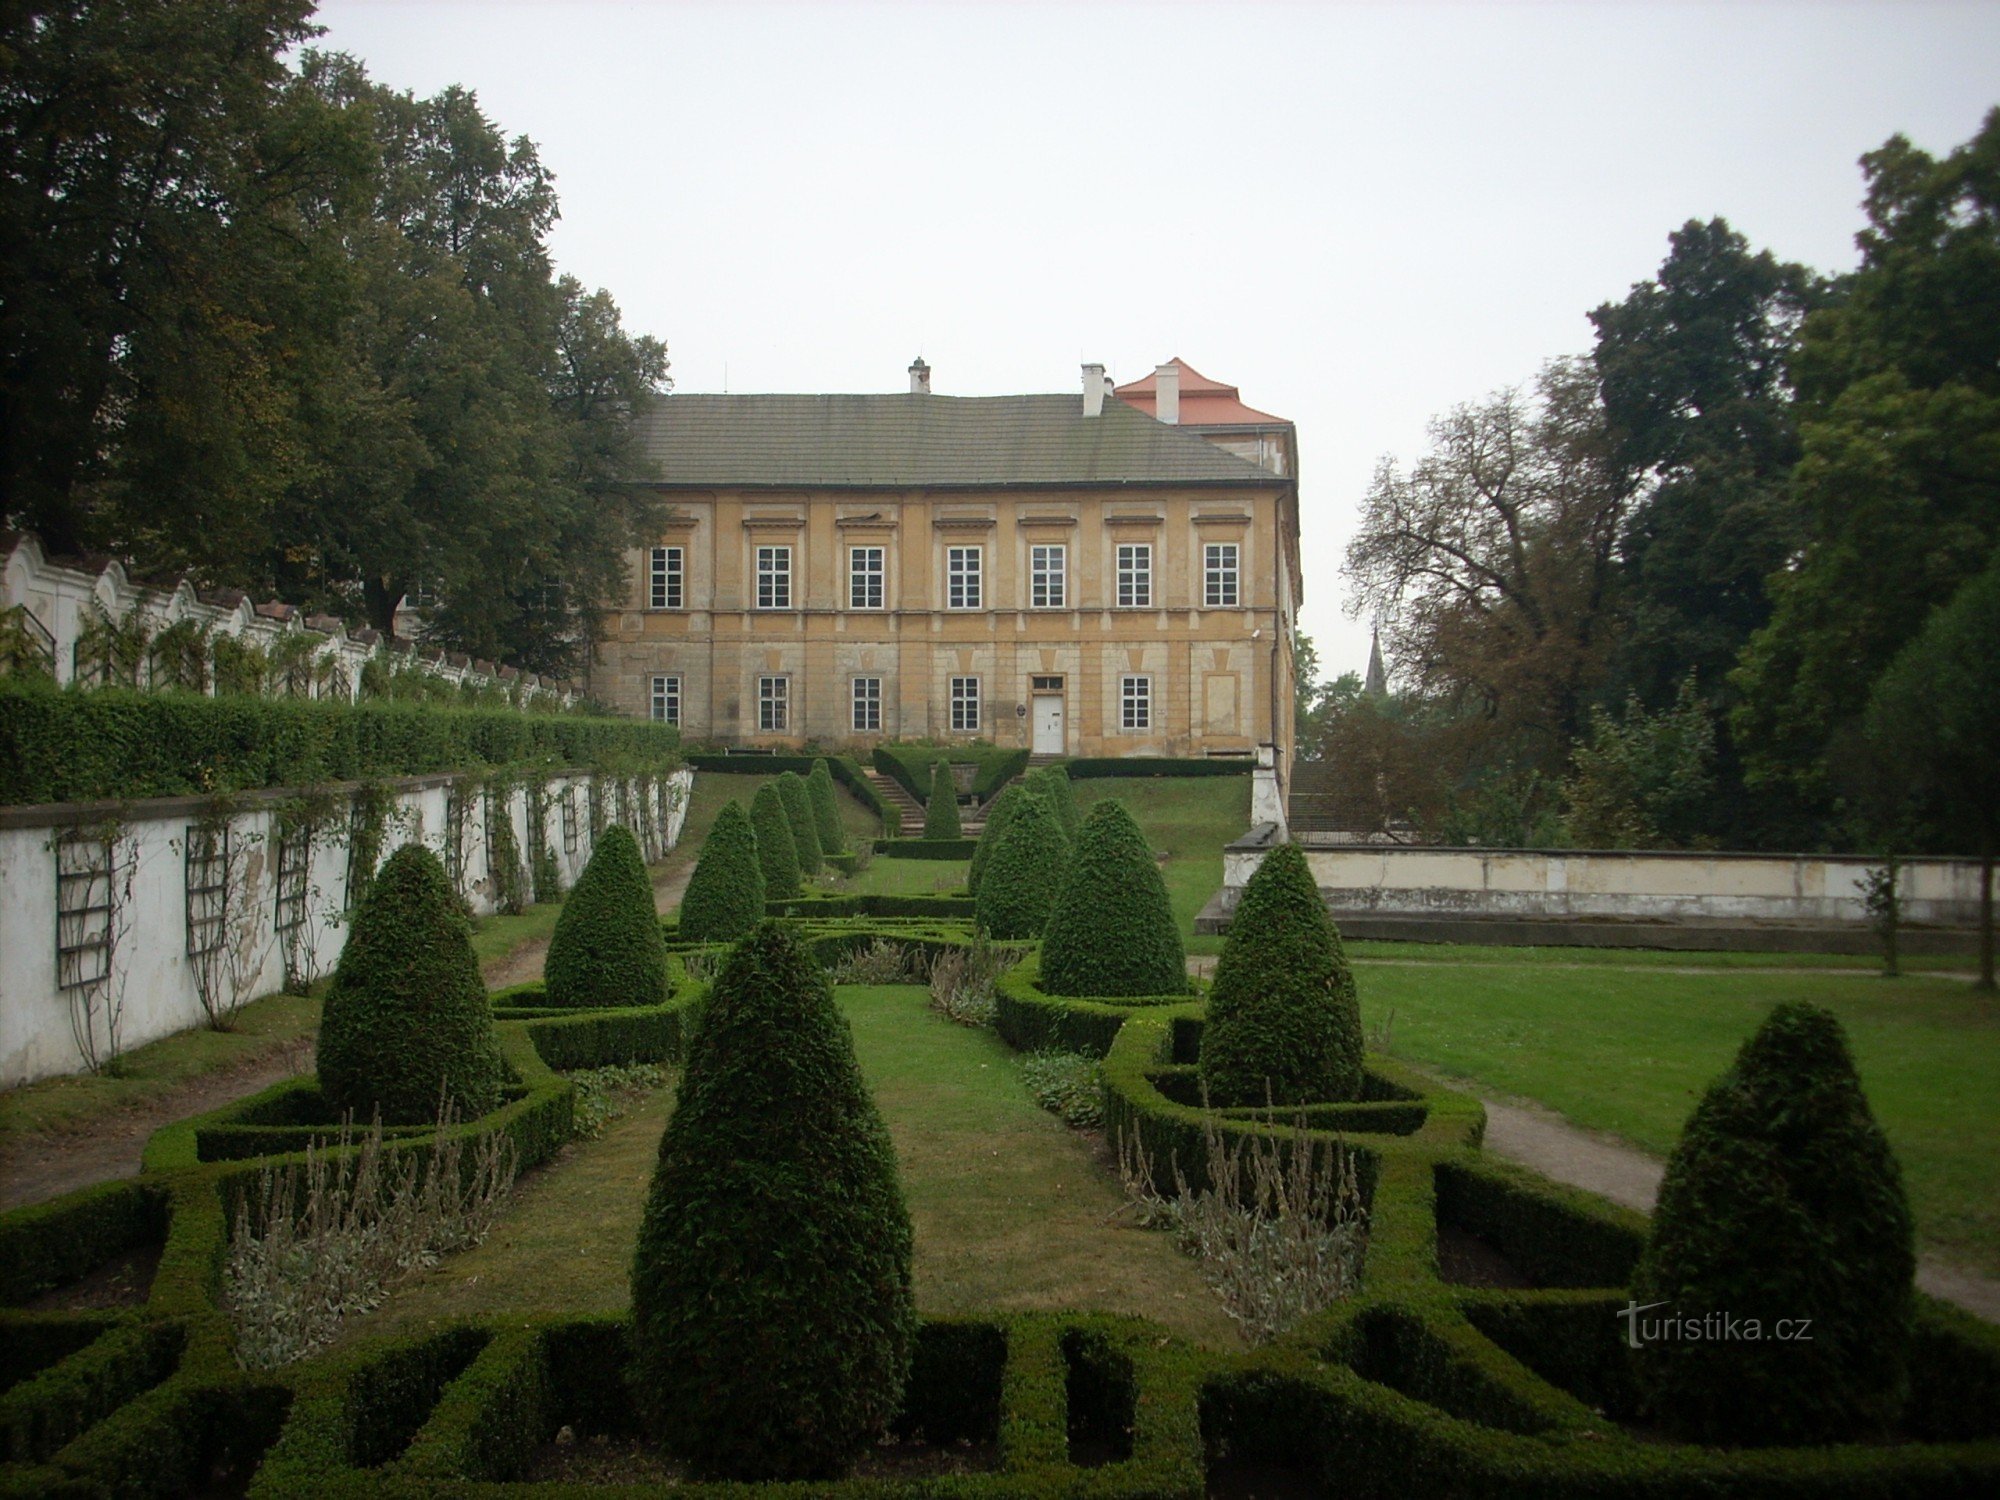 widok na zamek z ogrodami zamkowymi